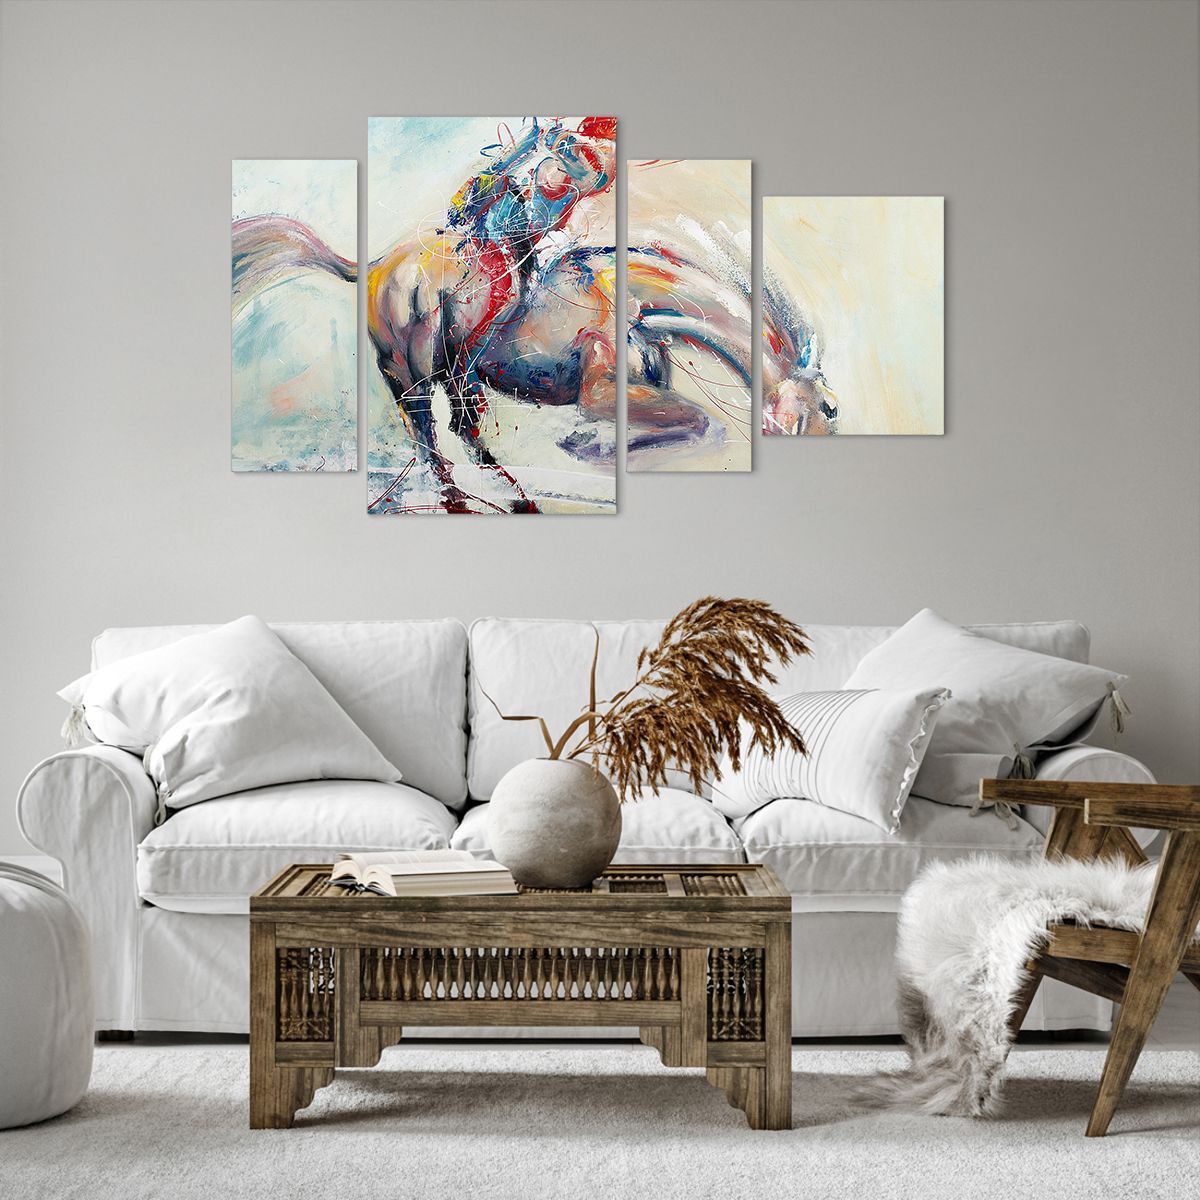 Bild auf Leinwand Tiere, Bild auf Leinwand Pferd, Bild auf Leinwand Fahrer, Bild auf Leinwand Jockey, Bild auf Leinwand Kunst